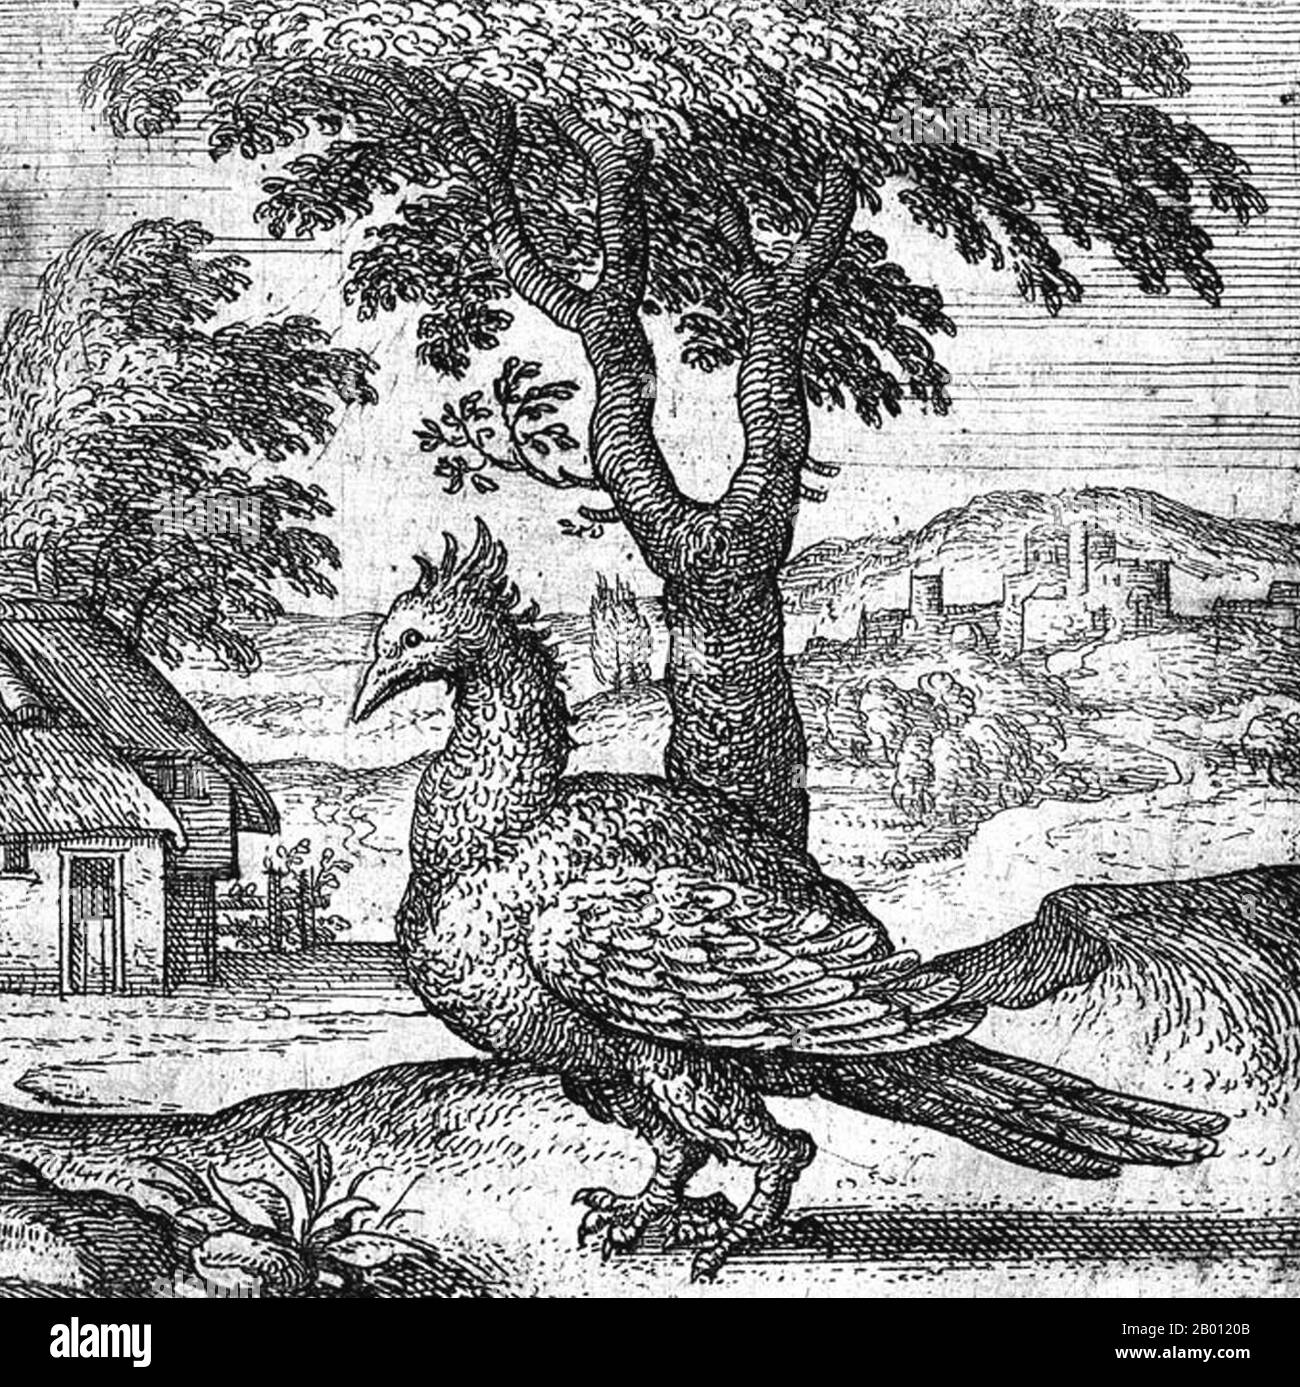 Mythologie : un phoenix représenté dans une gravure de copperplate par Pieter van der Borcht (1530-1608), 1591. Le phoenix est un oiseau de feu sacré mythique qui se trouve dans les mythologies des Perses, des Grecs, des Romains, des Egyptiens, des Chinois, Et (selon Sanchuniathon) Phéniciens. Un phoenix est un oiseau mythique qui est un esprit de feu avec un plumage coloré et une queue d'or et de scarlet (ou violet, bleu, et vert selon certaines légendes). Il a un cycle de vie de 500 à 1000 ans, près de la fin de laquelle il se construit un nid de brindilles qui s'enflamme alors. Le phoenix renaît alors des cendres. Banque D'Images